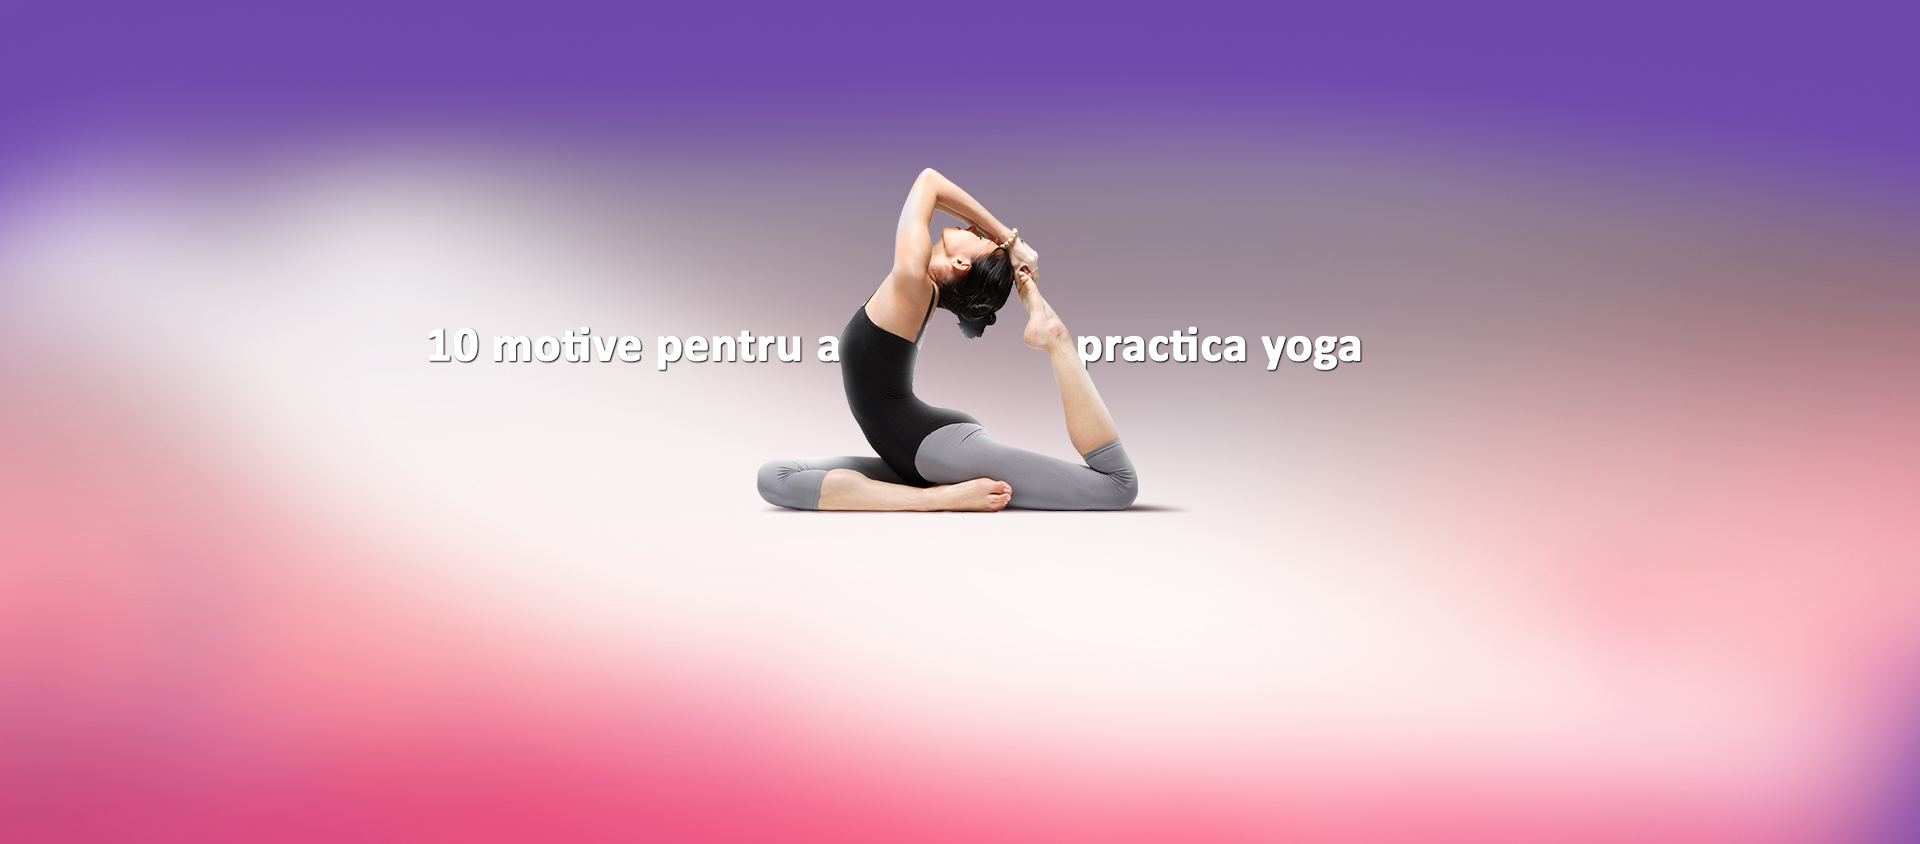 Descoperă 10 beneficii pentru a practica yoga.